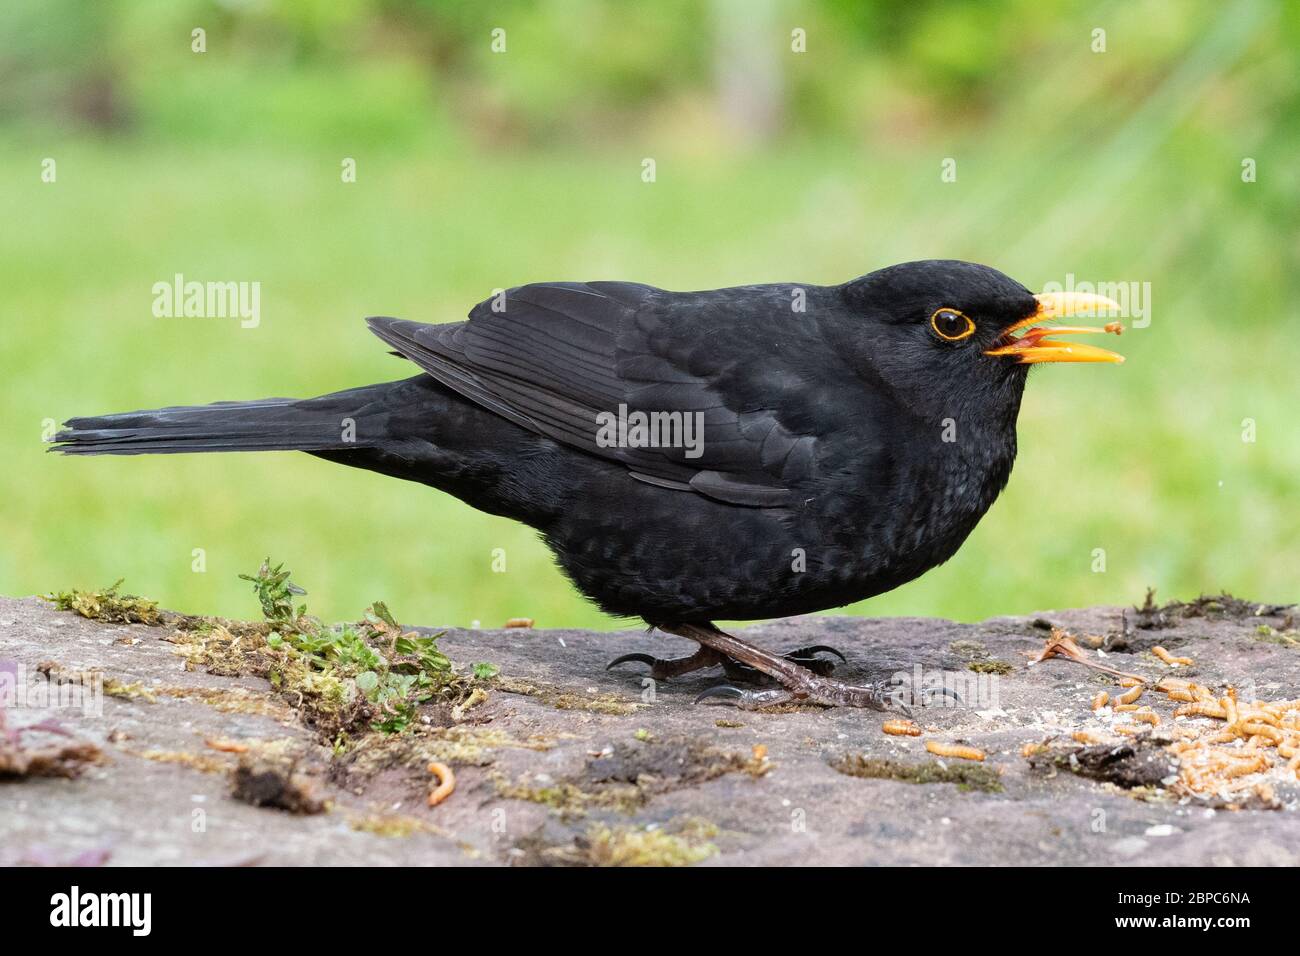 Langue de blackbird mâle visible tout en mangeant mealworms - Ecosse, Royaume-Uni Banque D'Images